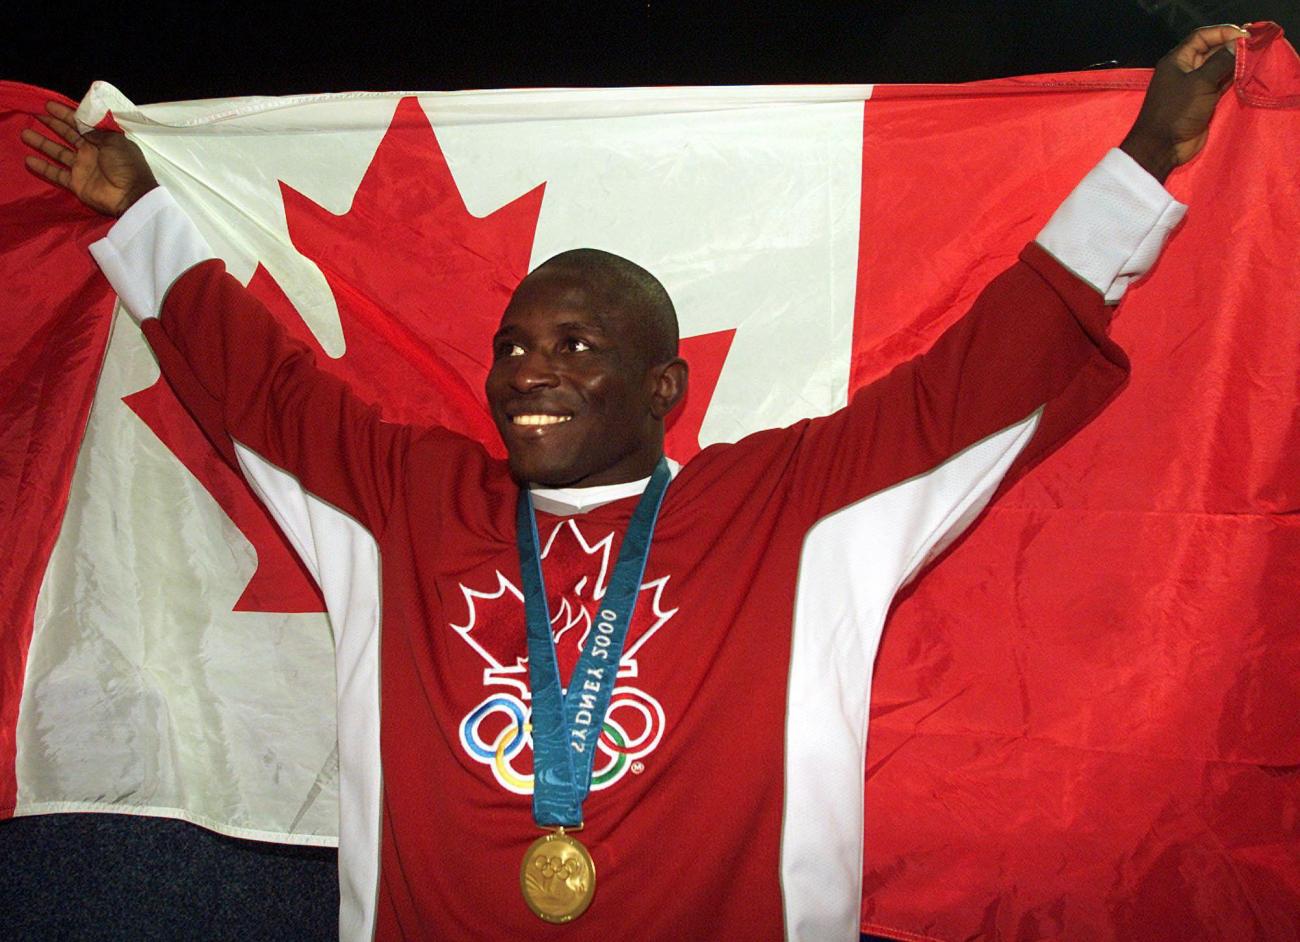 Daniel Igali, vêtu de rouge et portant une médaille, tient un drapeau canadien derrière lui.